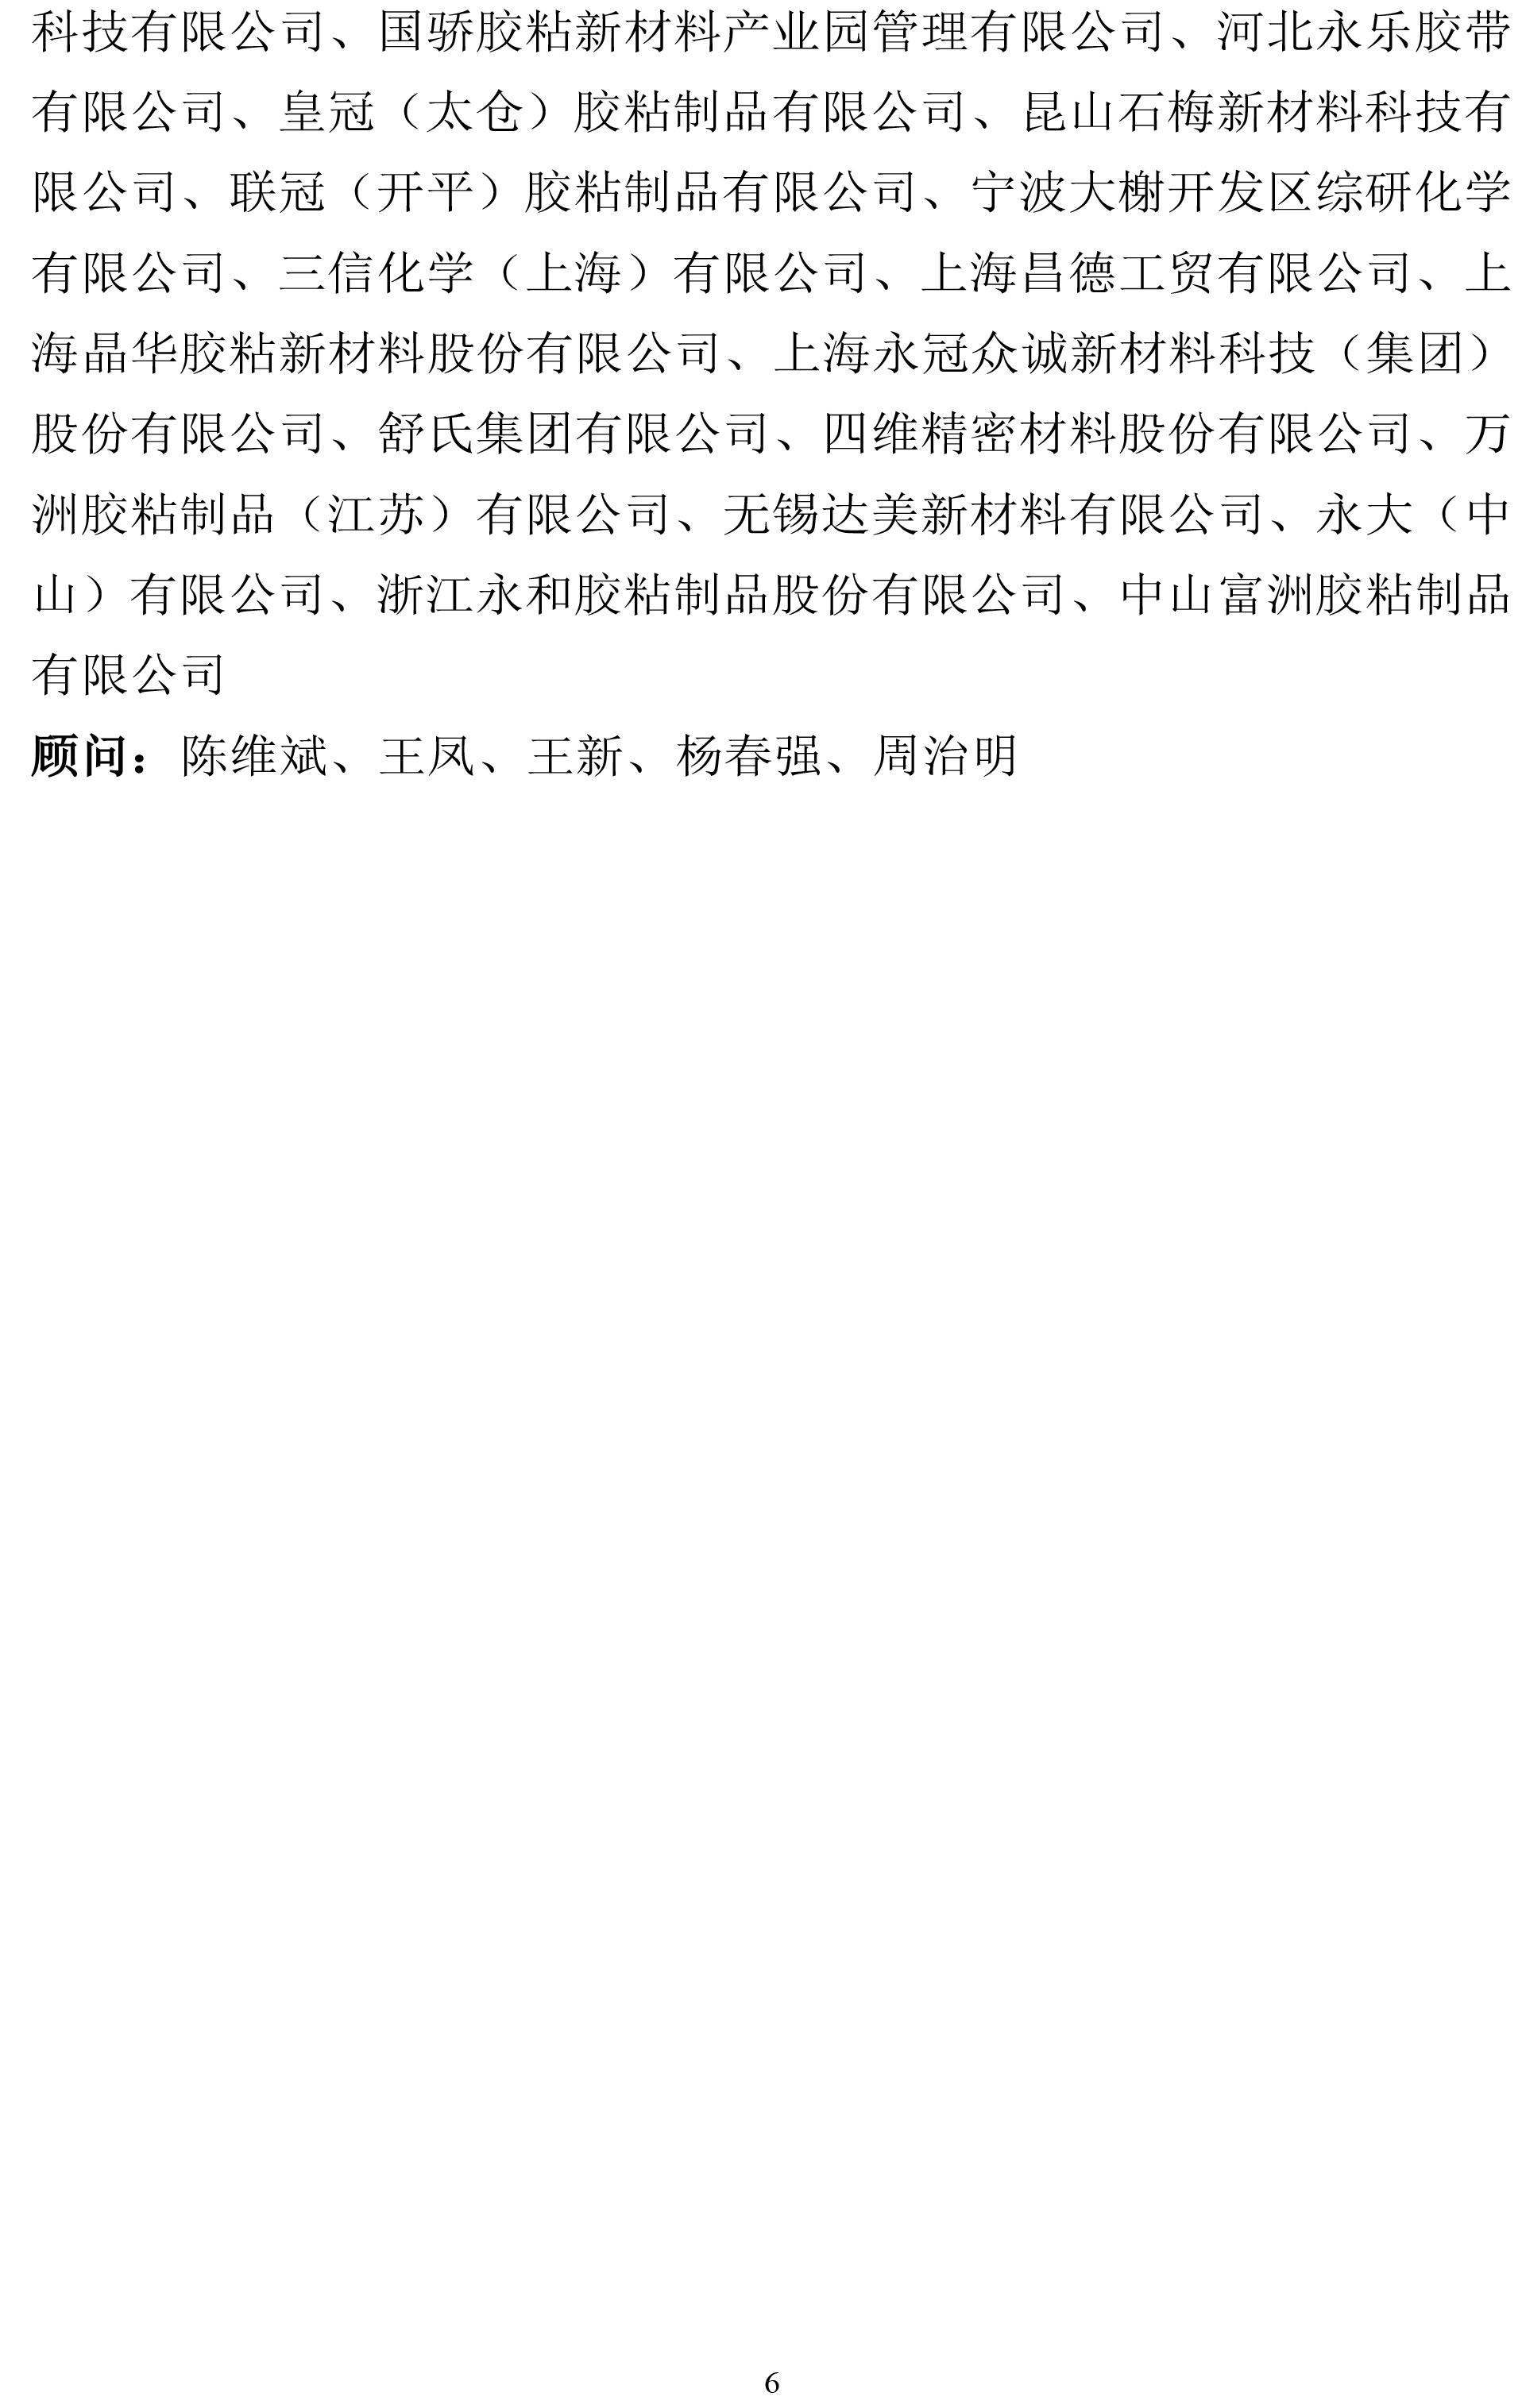 利发国际app(中国游)官方网站